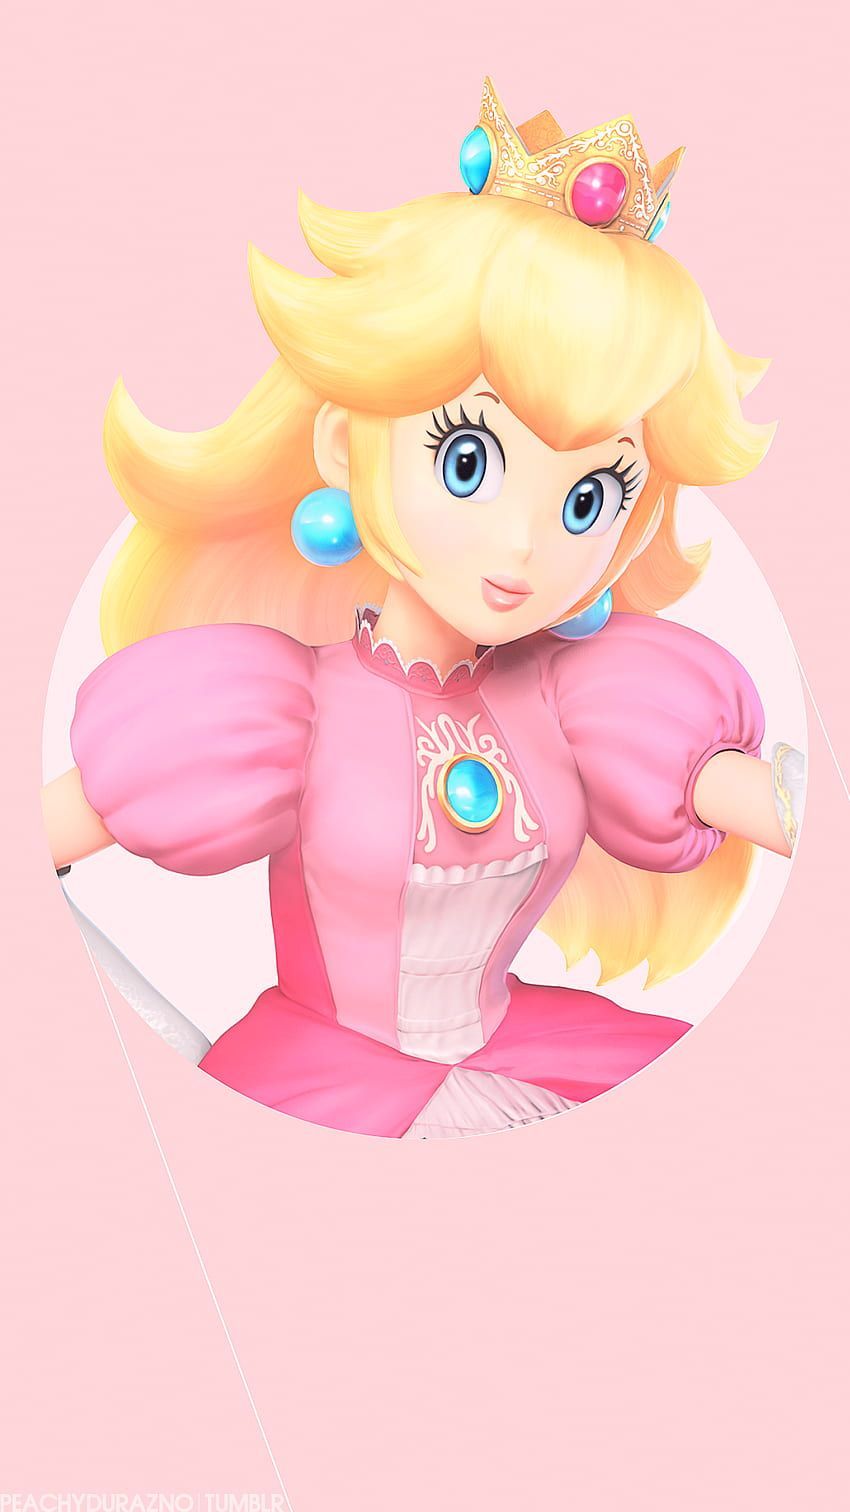 Peach from Mario bros in a pink dress - Princess Peach